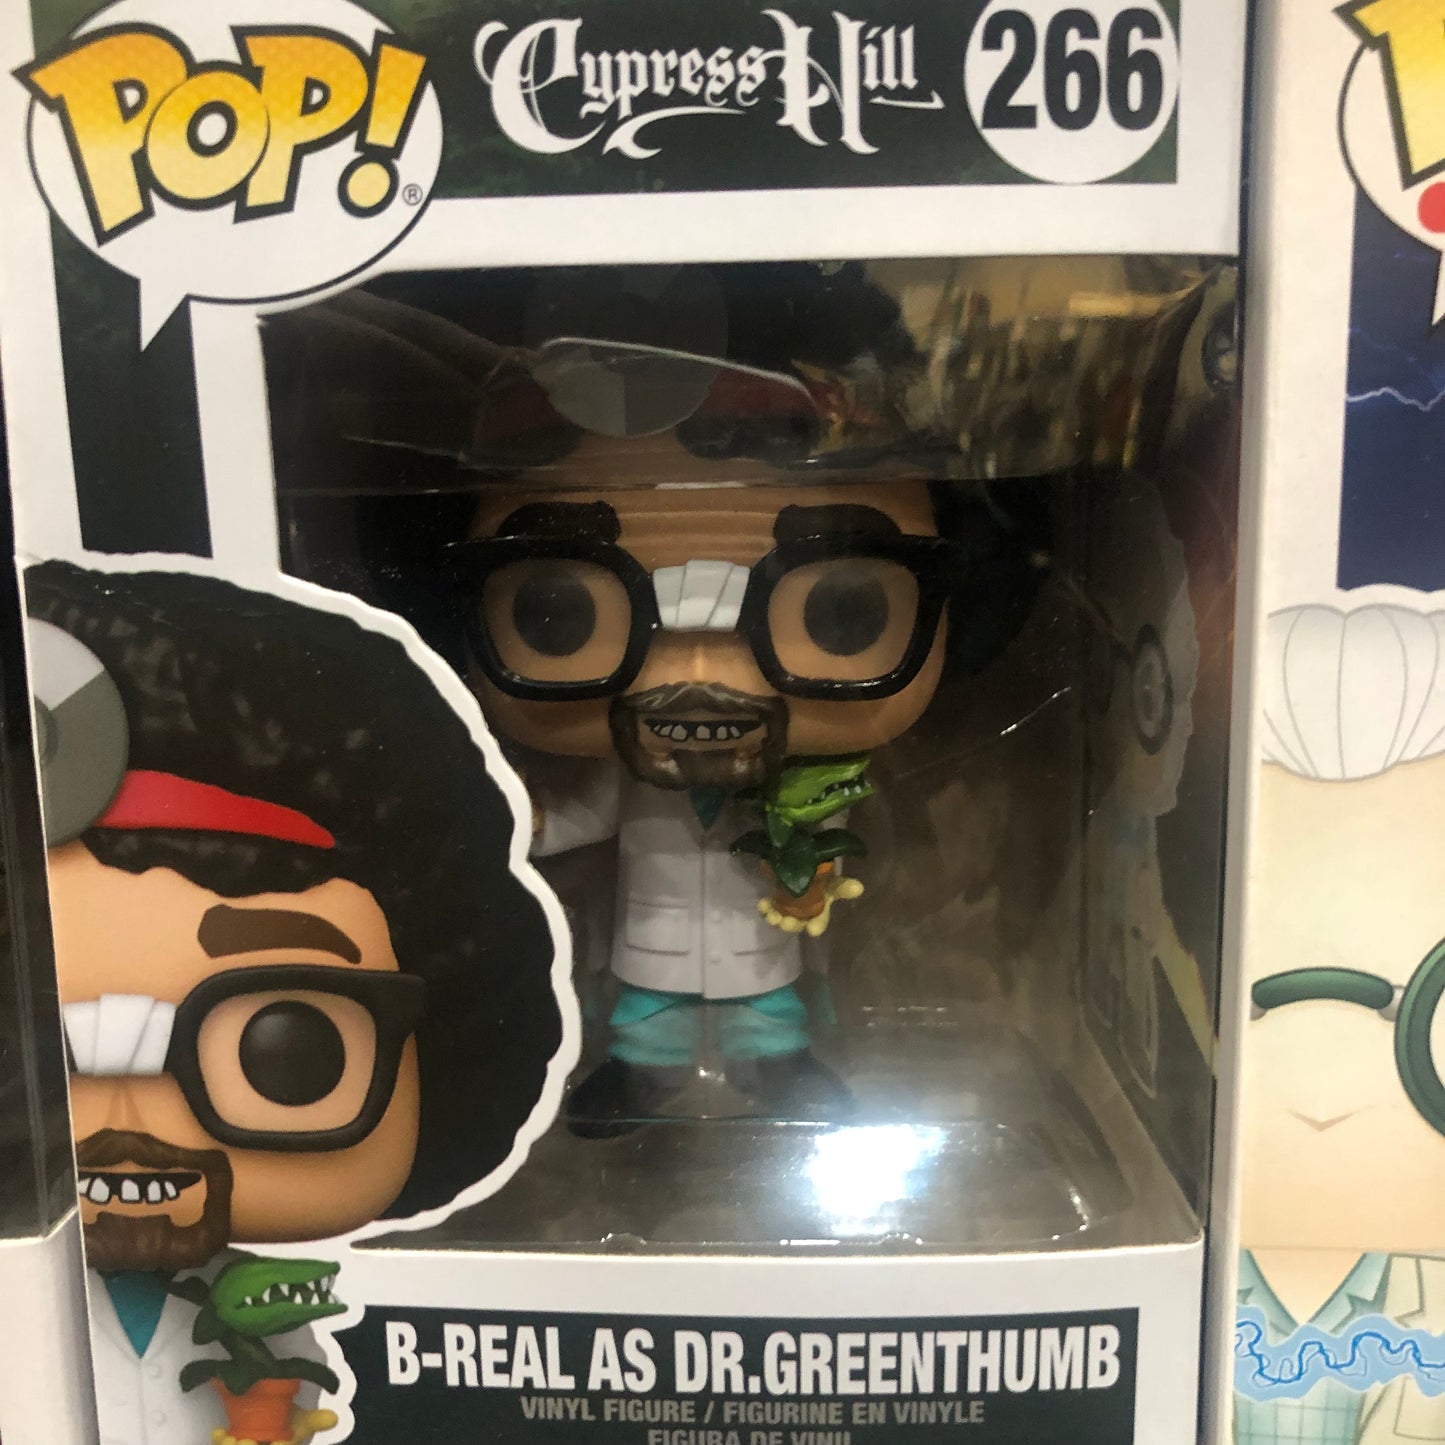 B-Real as Dr. Greenthumb Cypress HILL FUNKO POP! 266